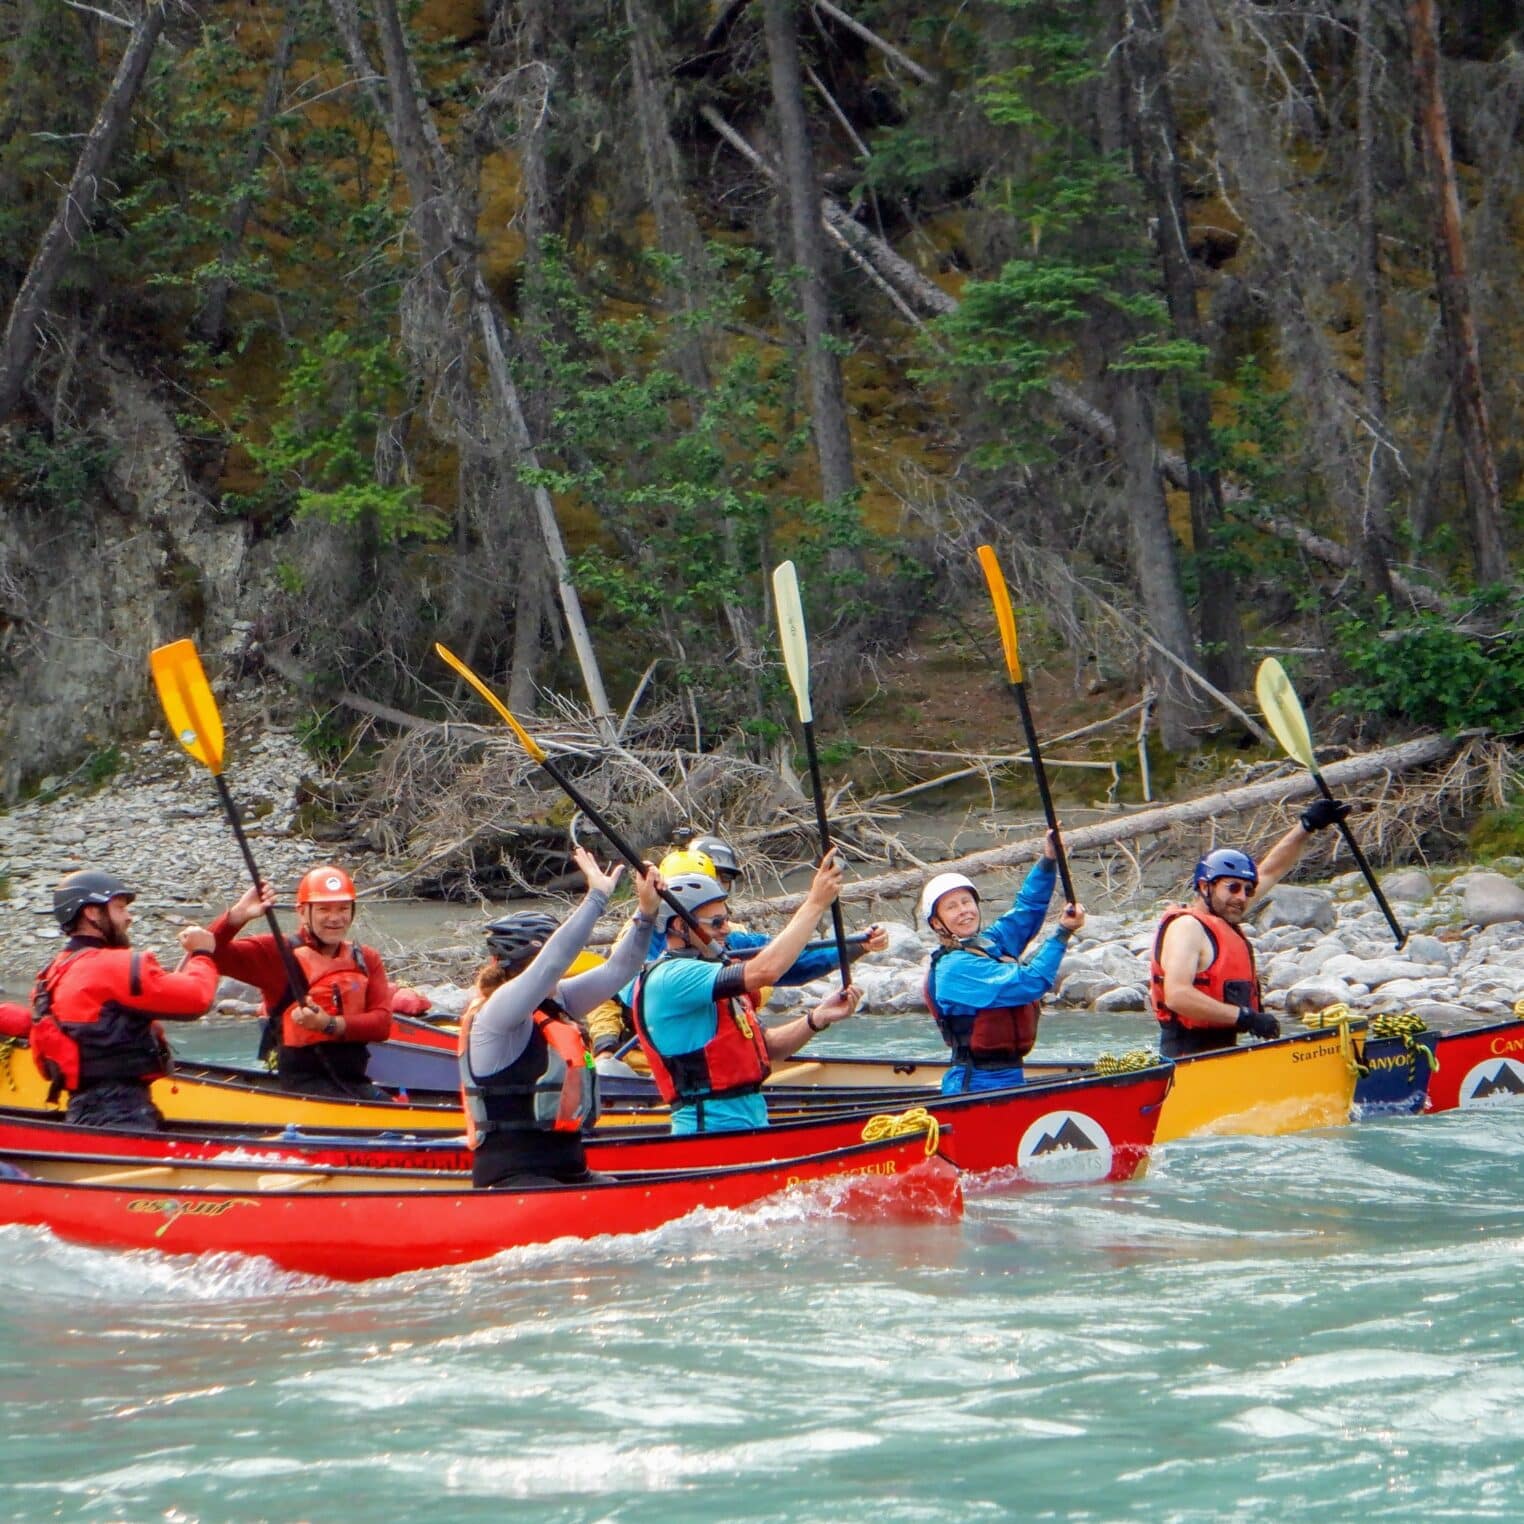 Kootenay river canoeing